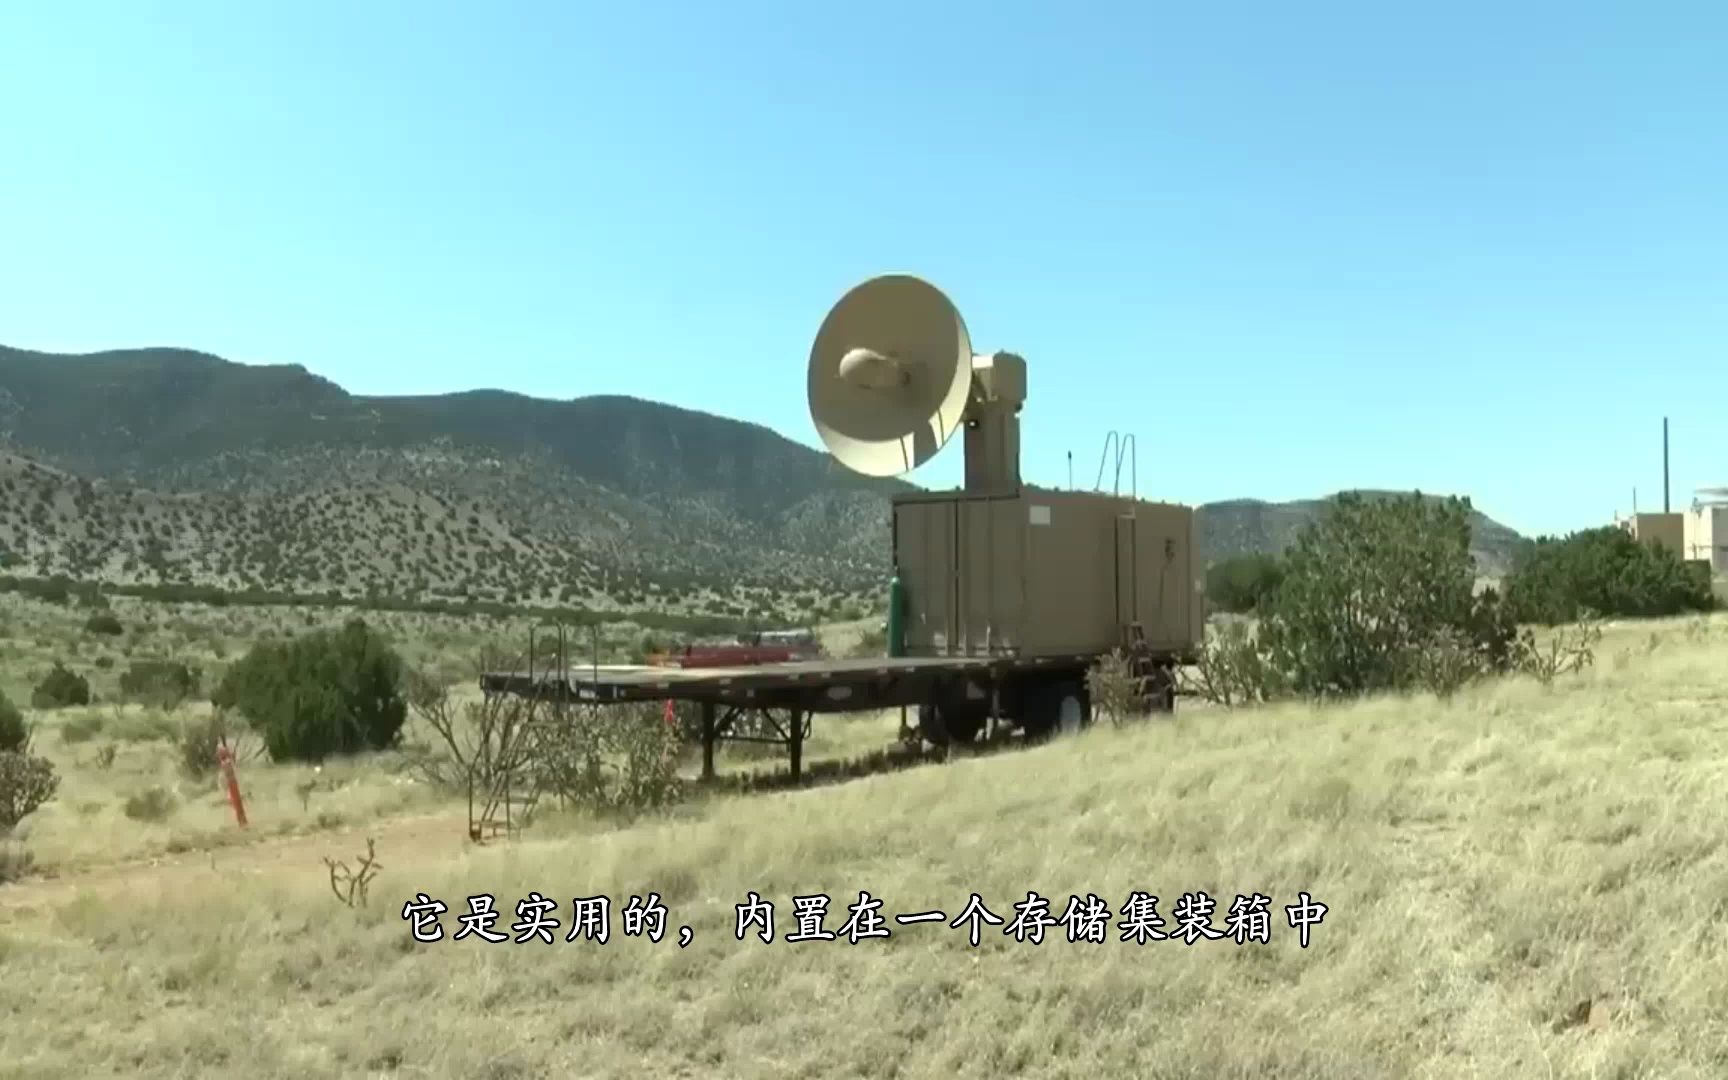 “雷神”高功率微波武器在科特兰空军基地测试反无人机能力-1080P